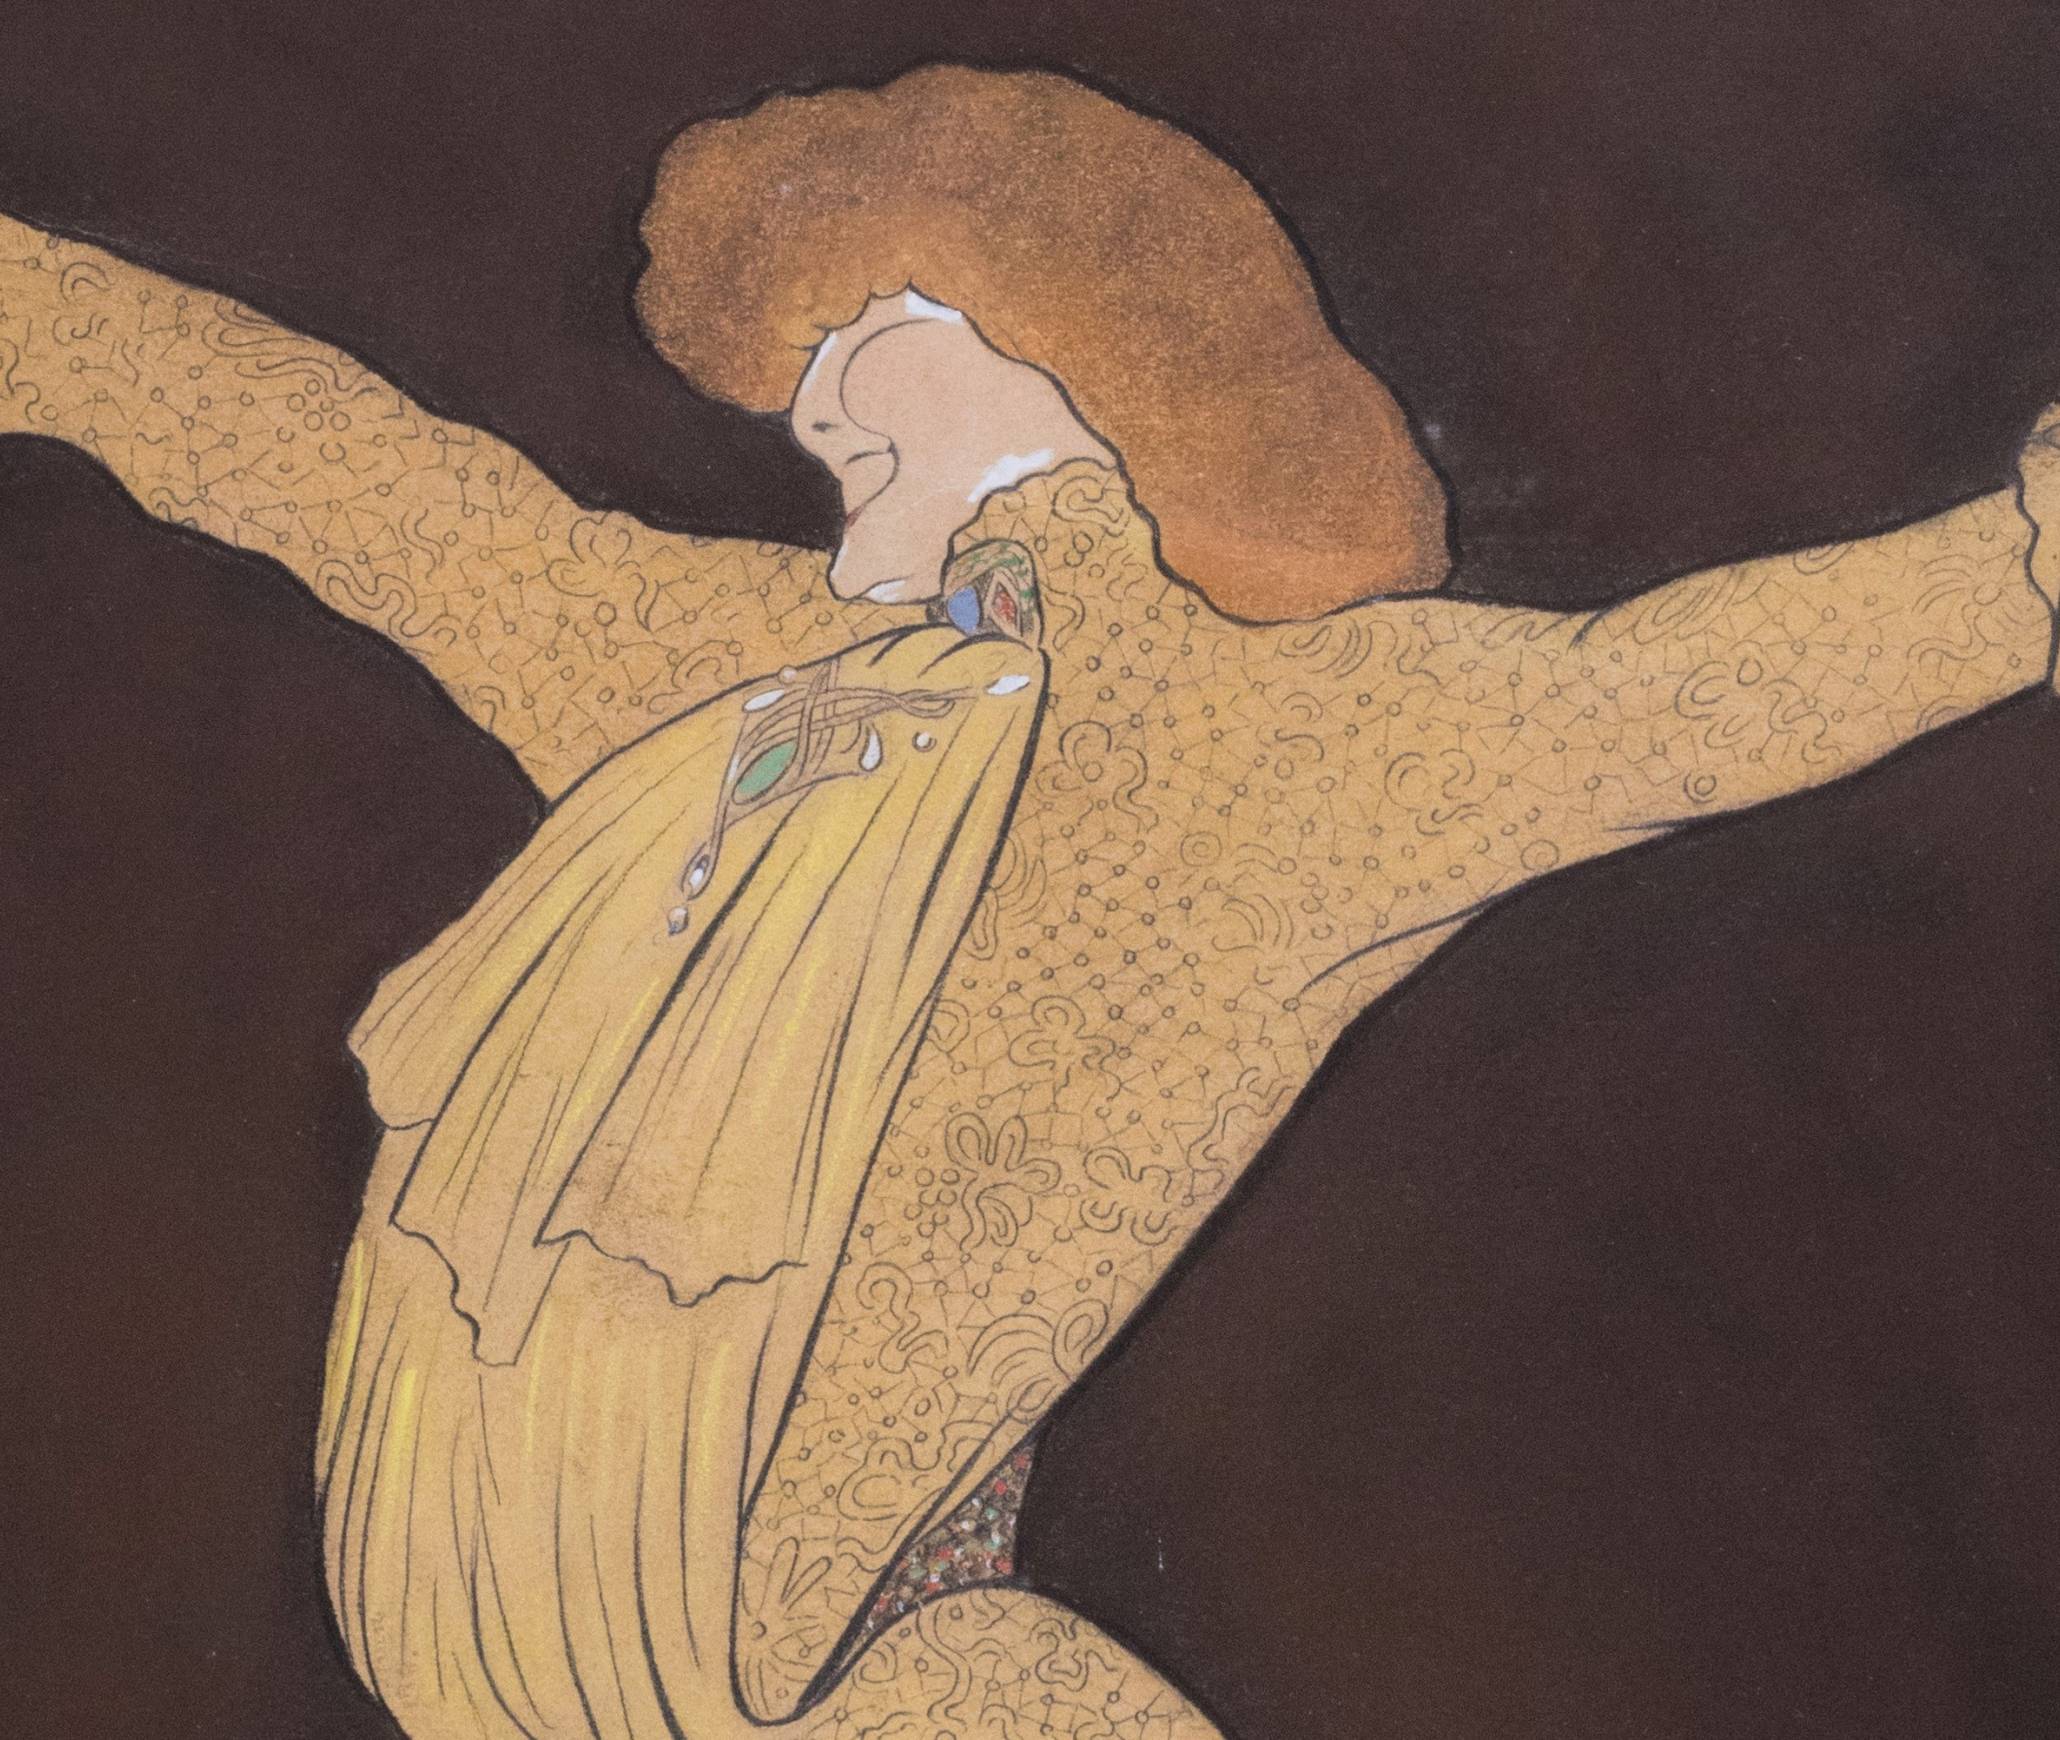 Cappiello. Mme Sarah Bernhardt, 1903, mine de plomb, pastel, aquarelle, rehauts de gouache blanche sur papier. Atelier Cappiello